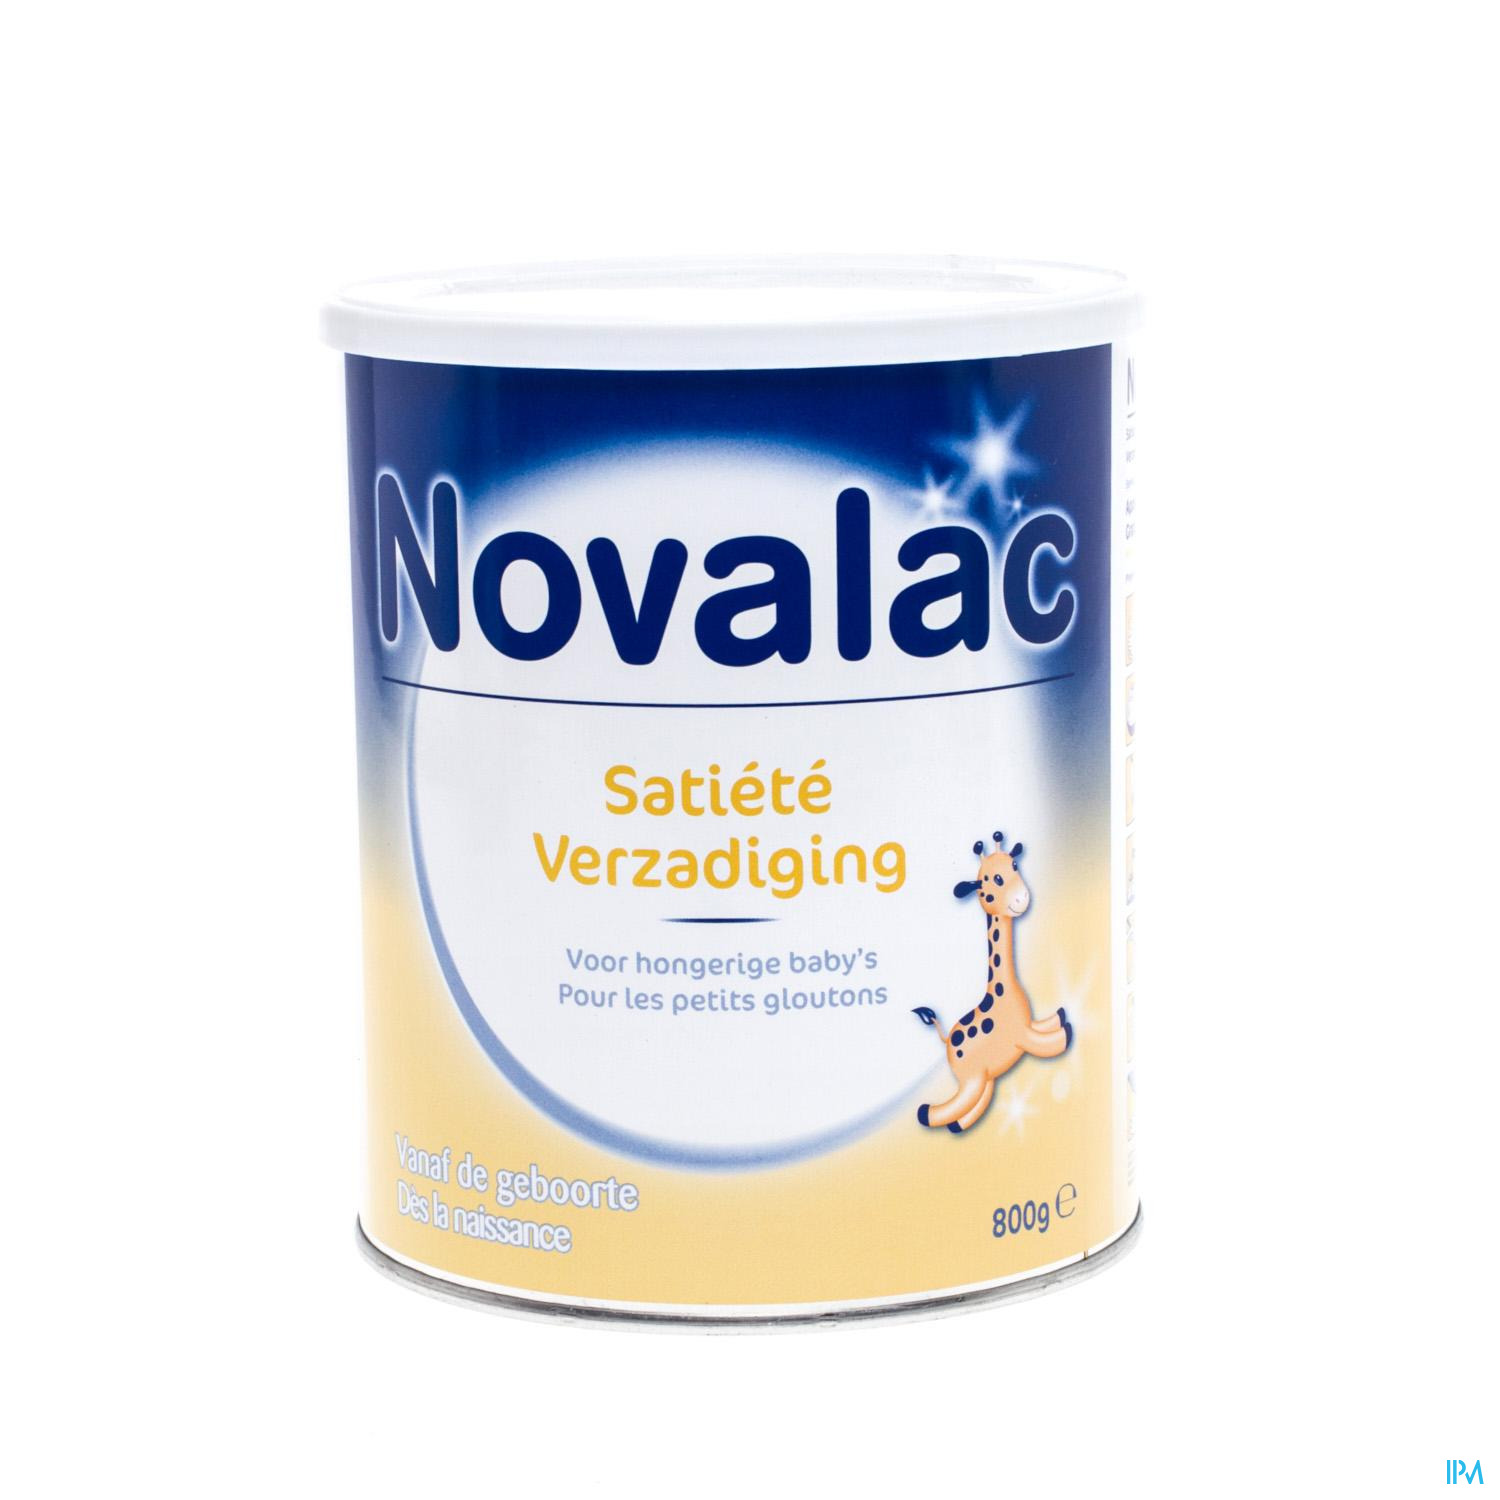 Novalac Verzadiging 0-12m Zuigelingenmelk Pdr 800g